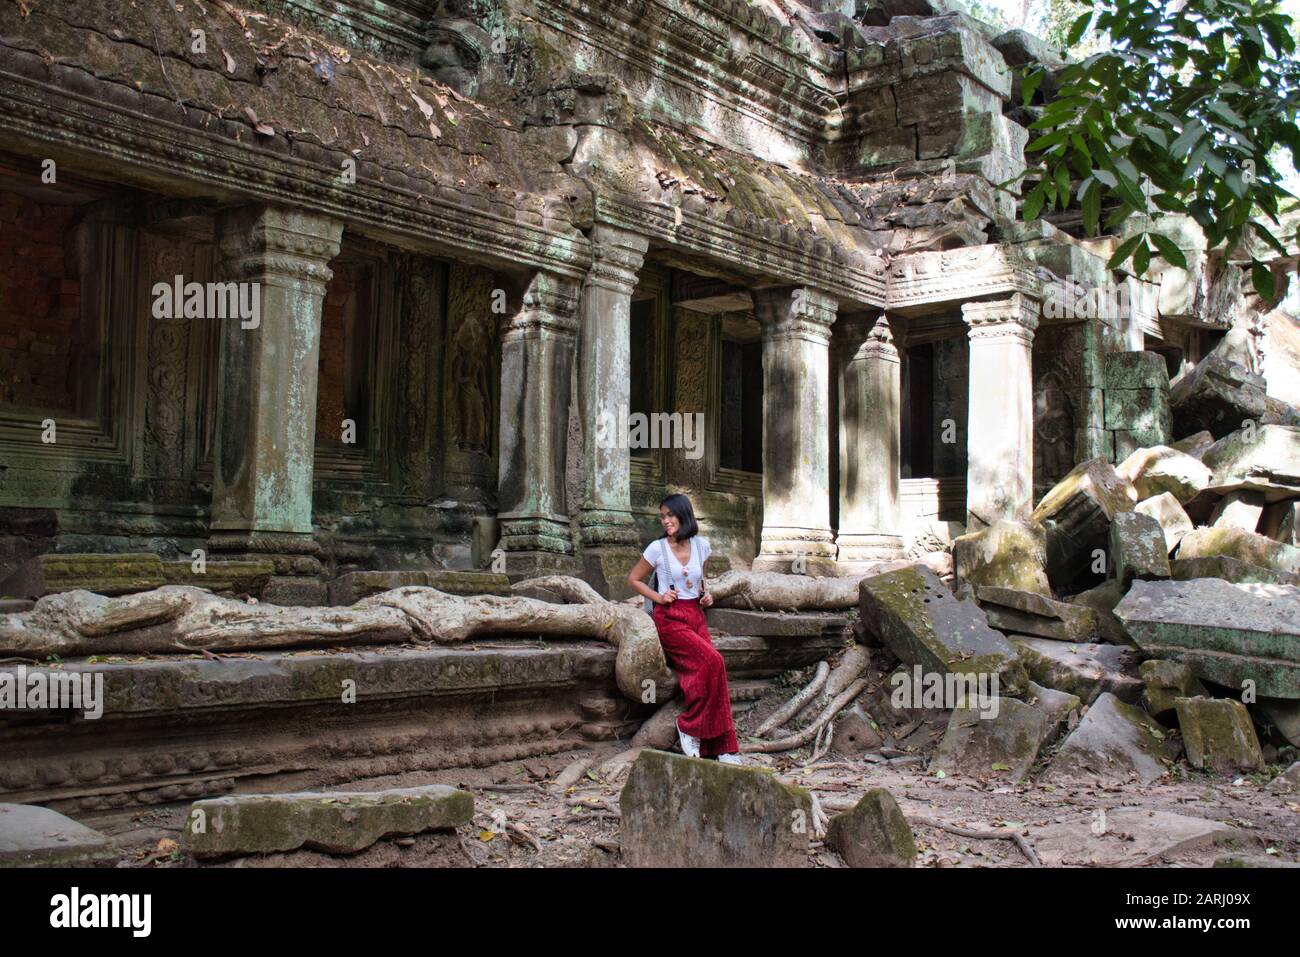 Bella, bella, giovane ragazza tailandese sta esplorando le antiche rovine di Angkor Wat (Città / capitale dei Templi) complesso tempio indù a Siem Reap, Cambogia Foto Stock